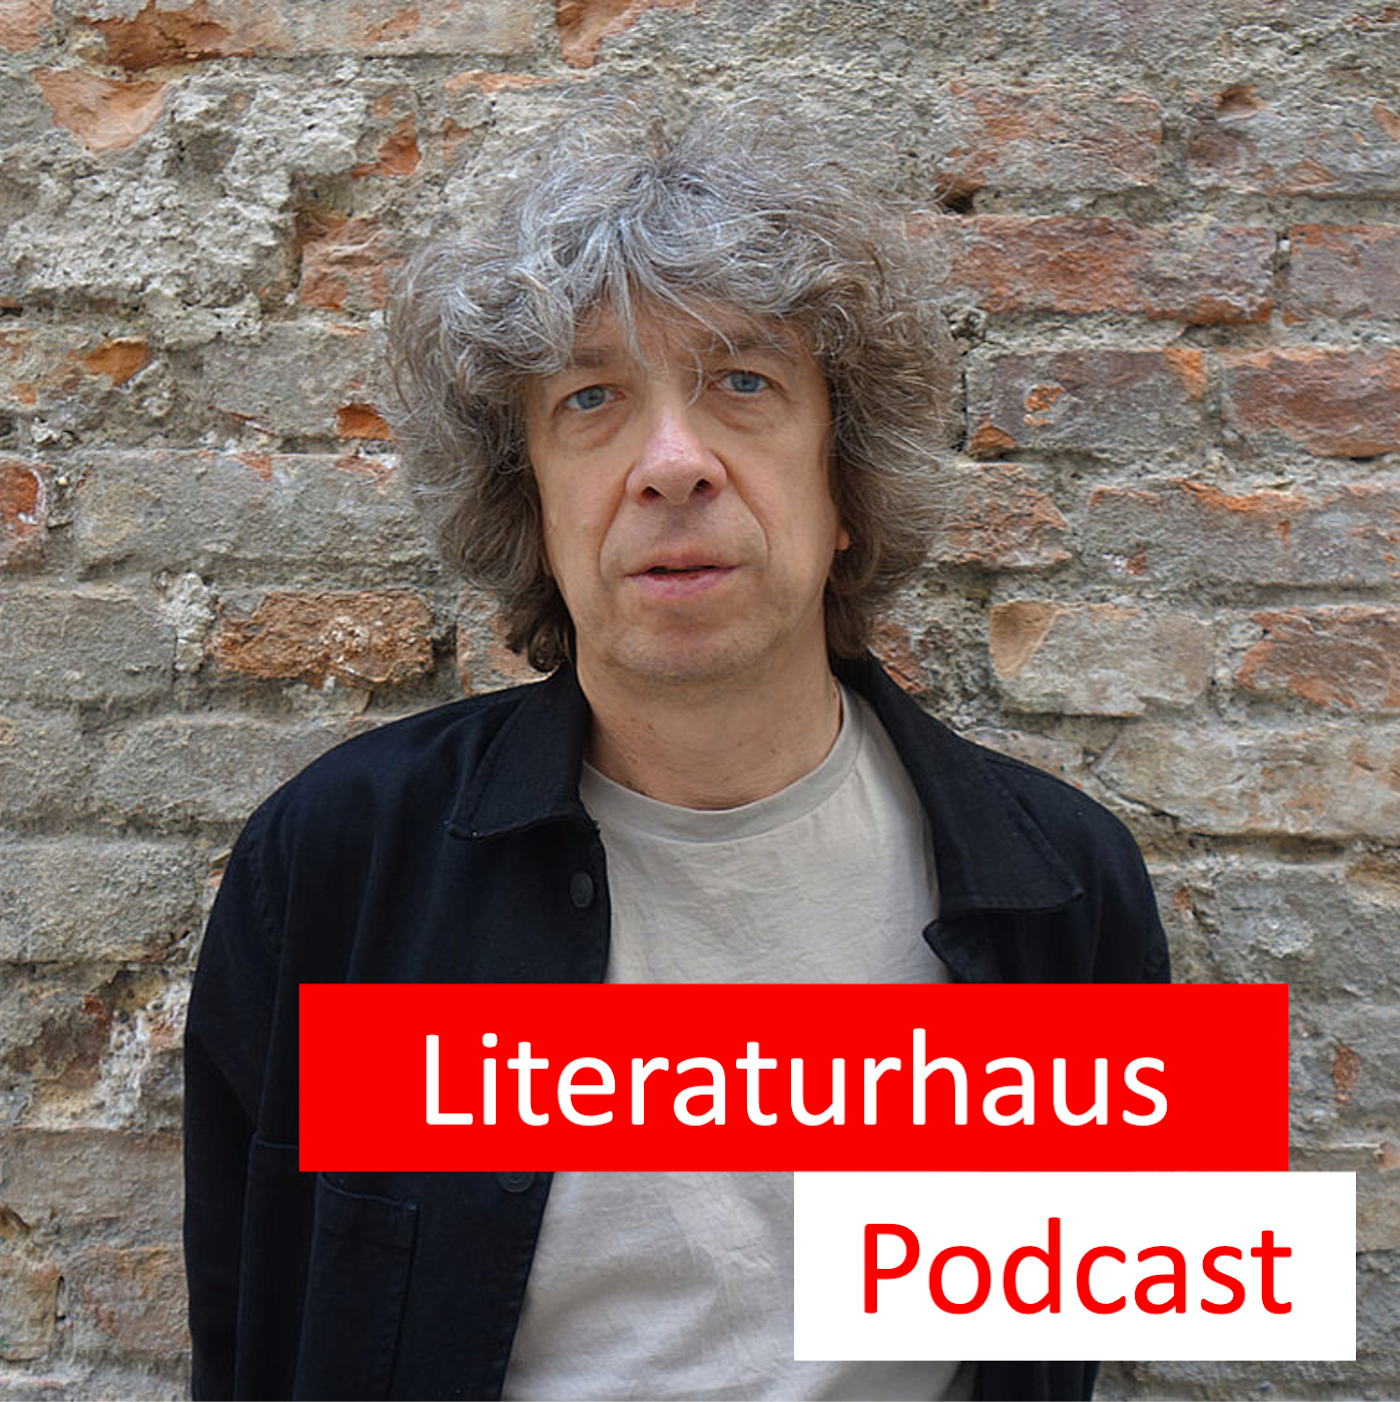 Porträtfoto von Thomas Stangl mit Literaturhaus Podcast Aufschrift